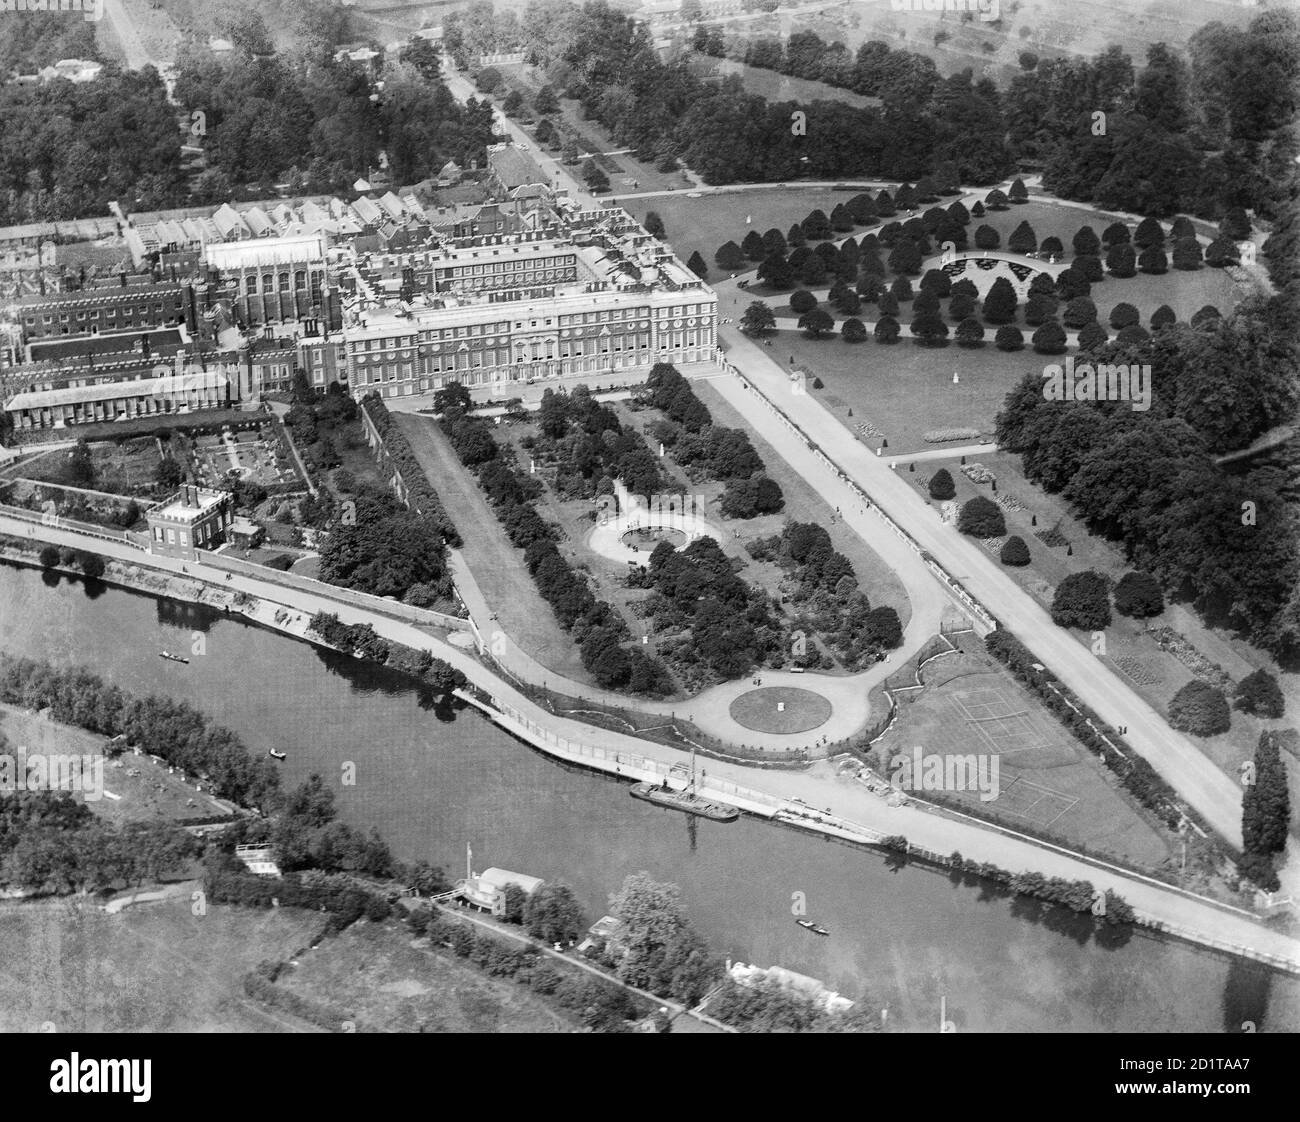 HAMPTON COURT, Richmond-upon-Thames, Londra. Vista aerea di Hampton Court Palace, dei giardini e del Tamigi. Fotografato nel 1920. Aerofilms Collection (vedi link). Foto Stock